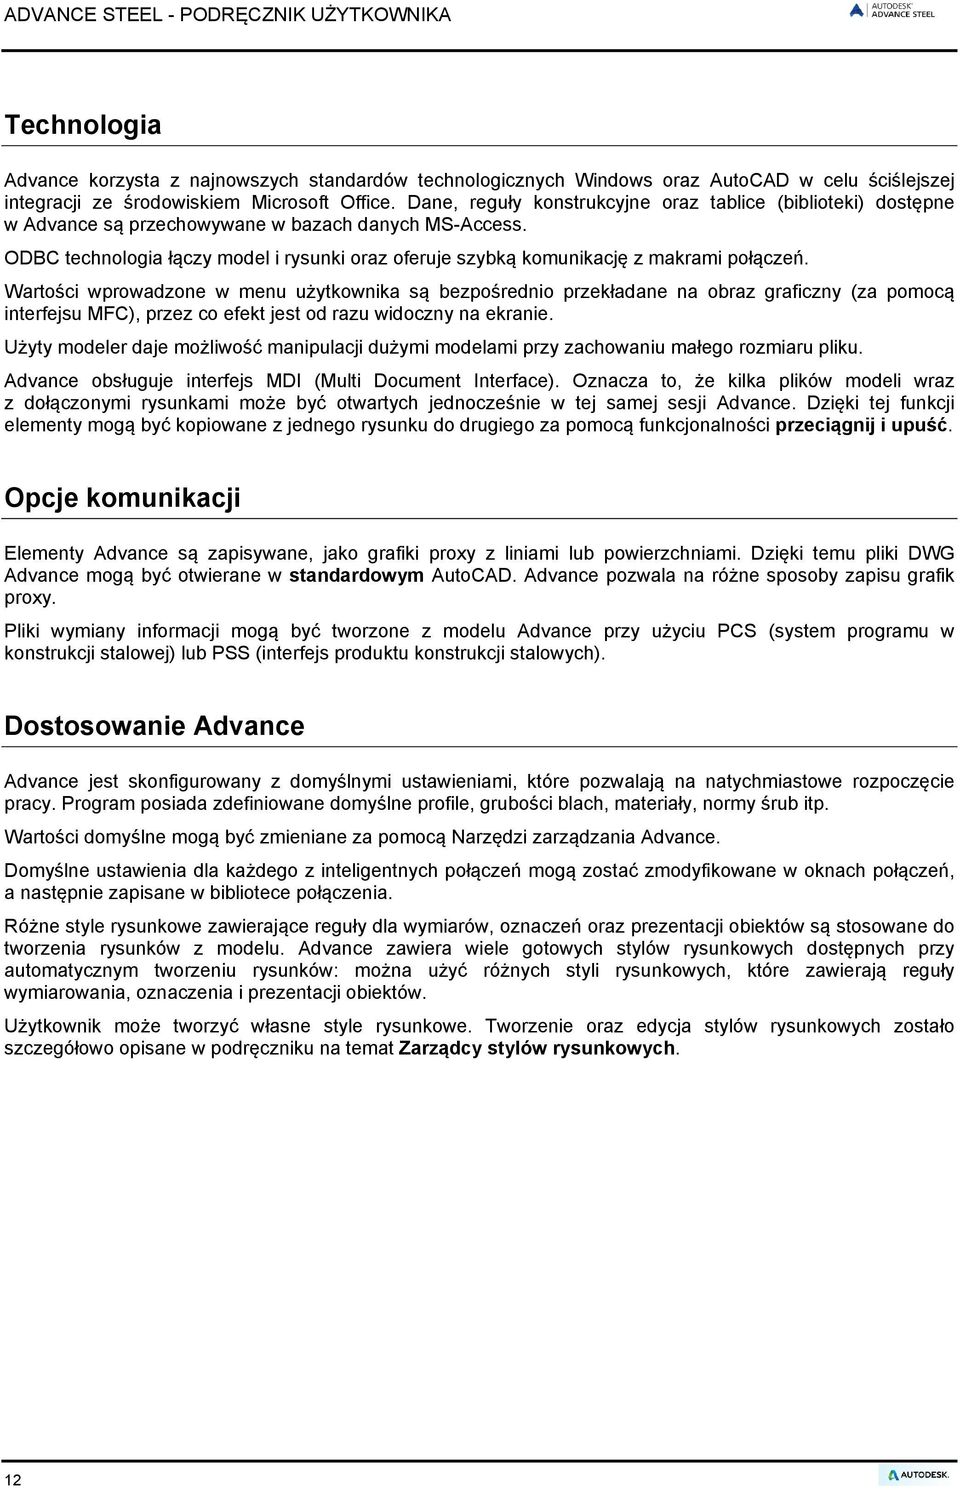 Podręcznik użytkownika - PDF Darmowe pobieranie